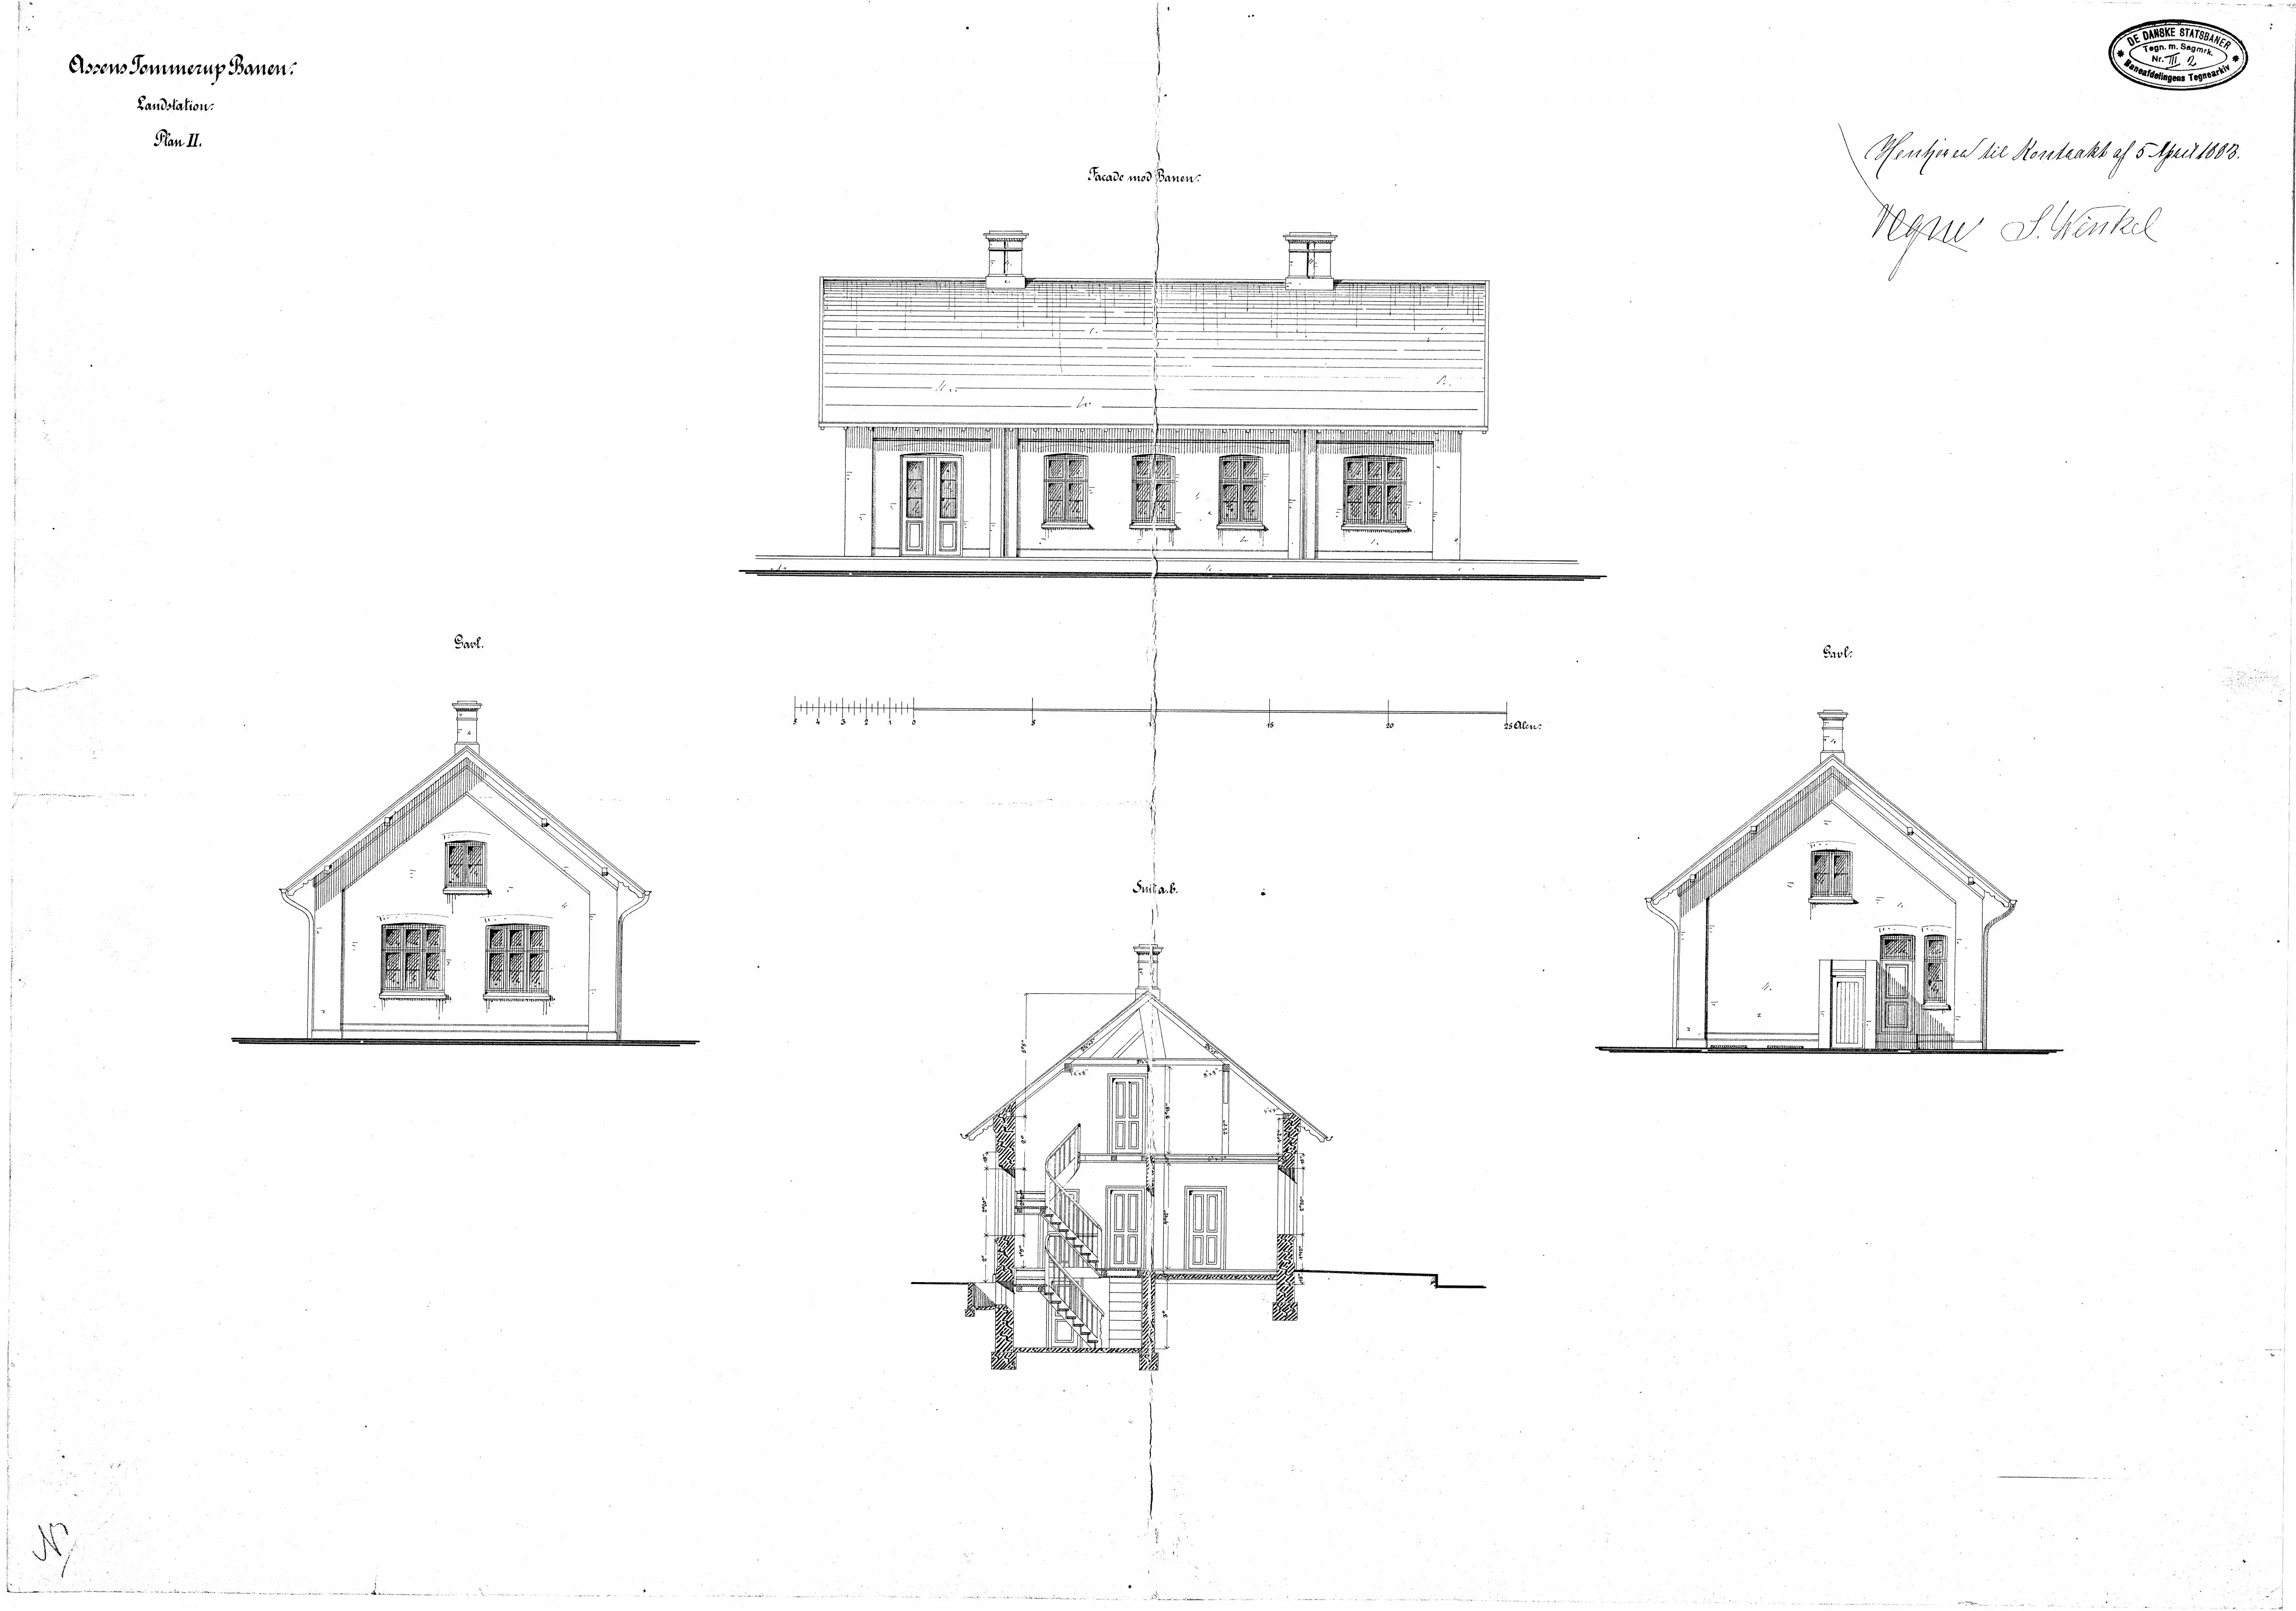 Tegning af Flemløse Station.